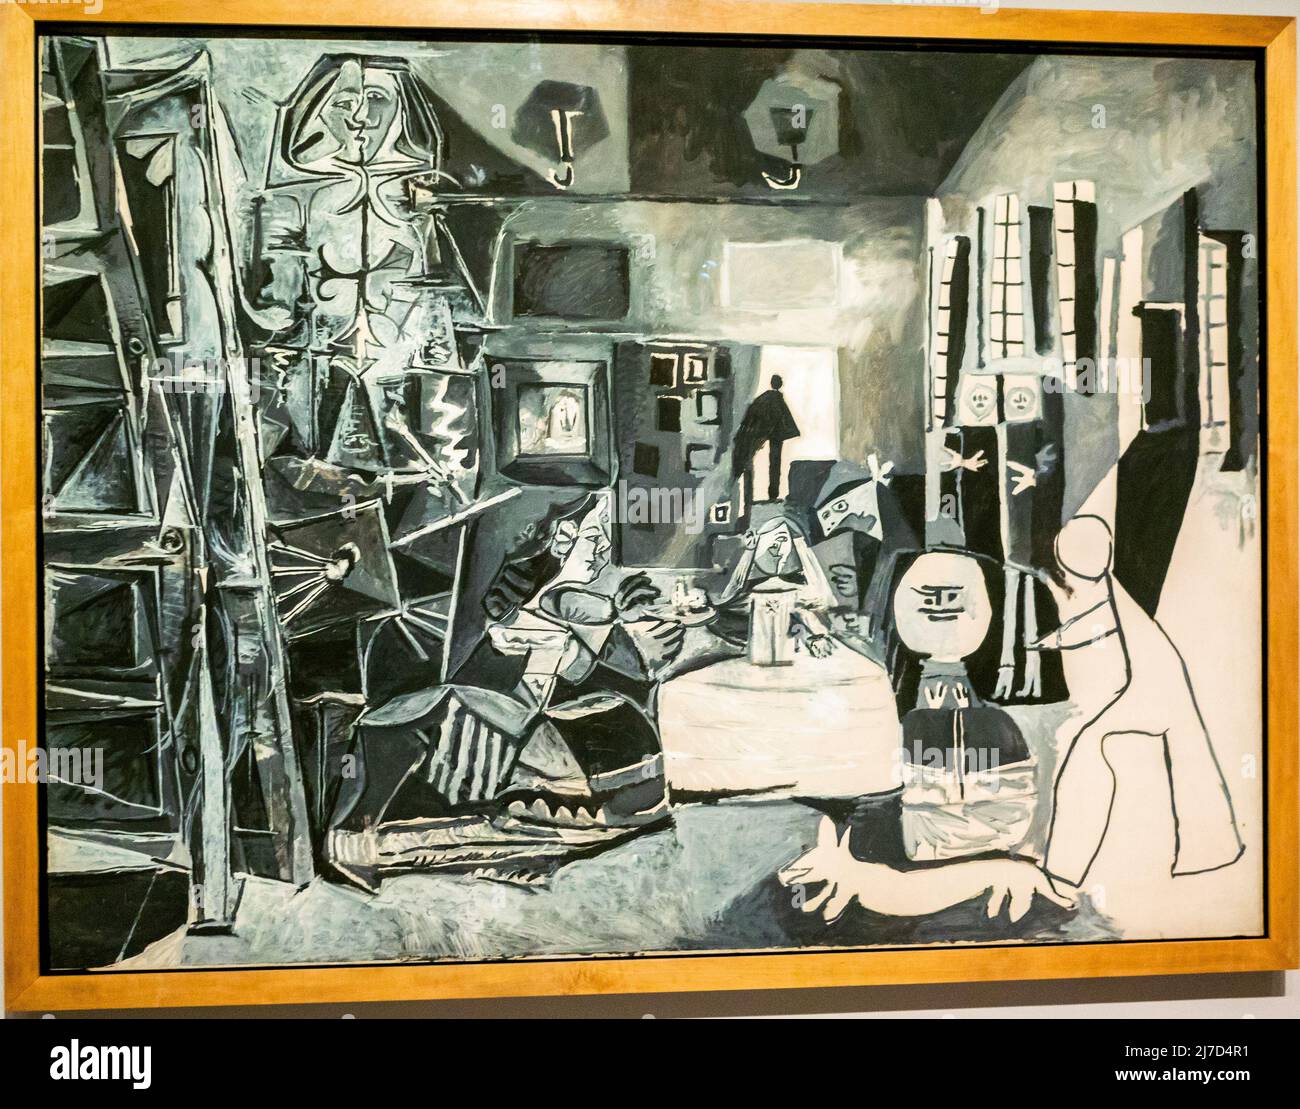 Barcelone, Espagne, Musée Pablo Picasso, peinture abstraite, 'Las Meninas, Cannes, 1957' peintures de pablo picasso, art moderne style Picasso Banque D'Images